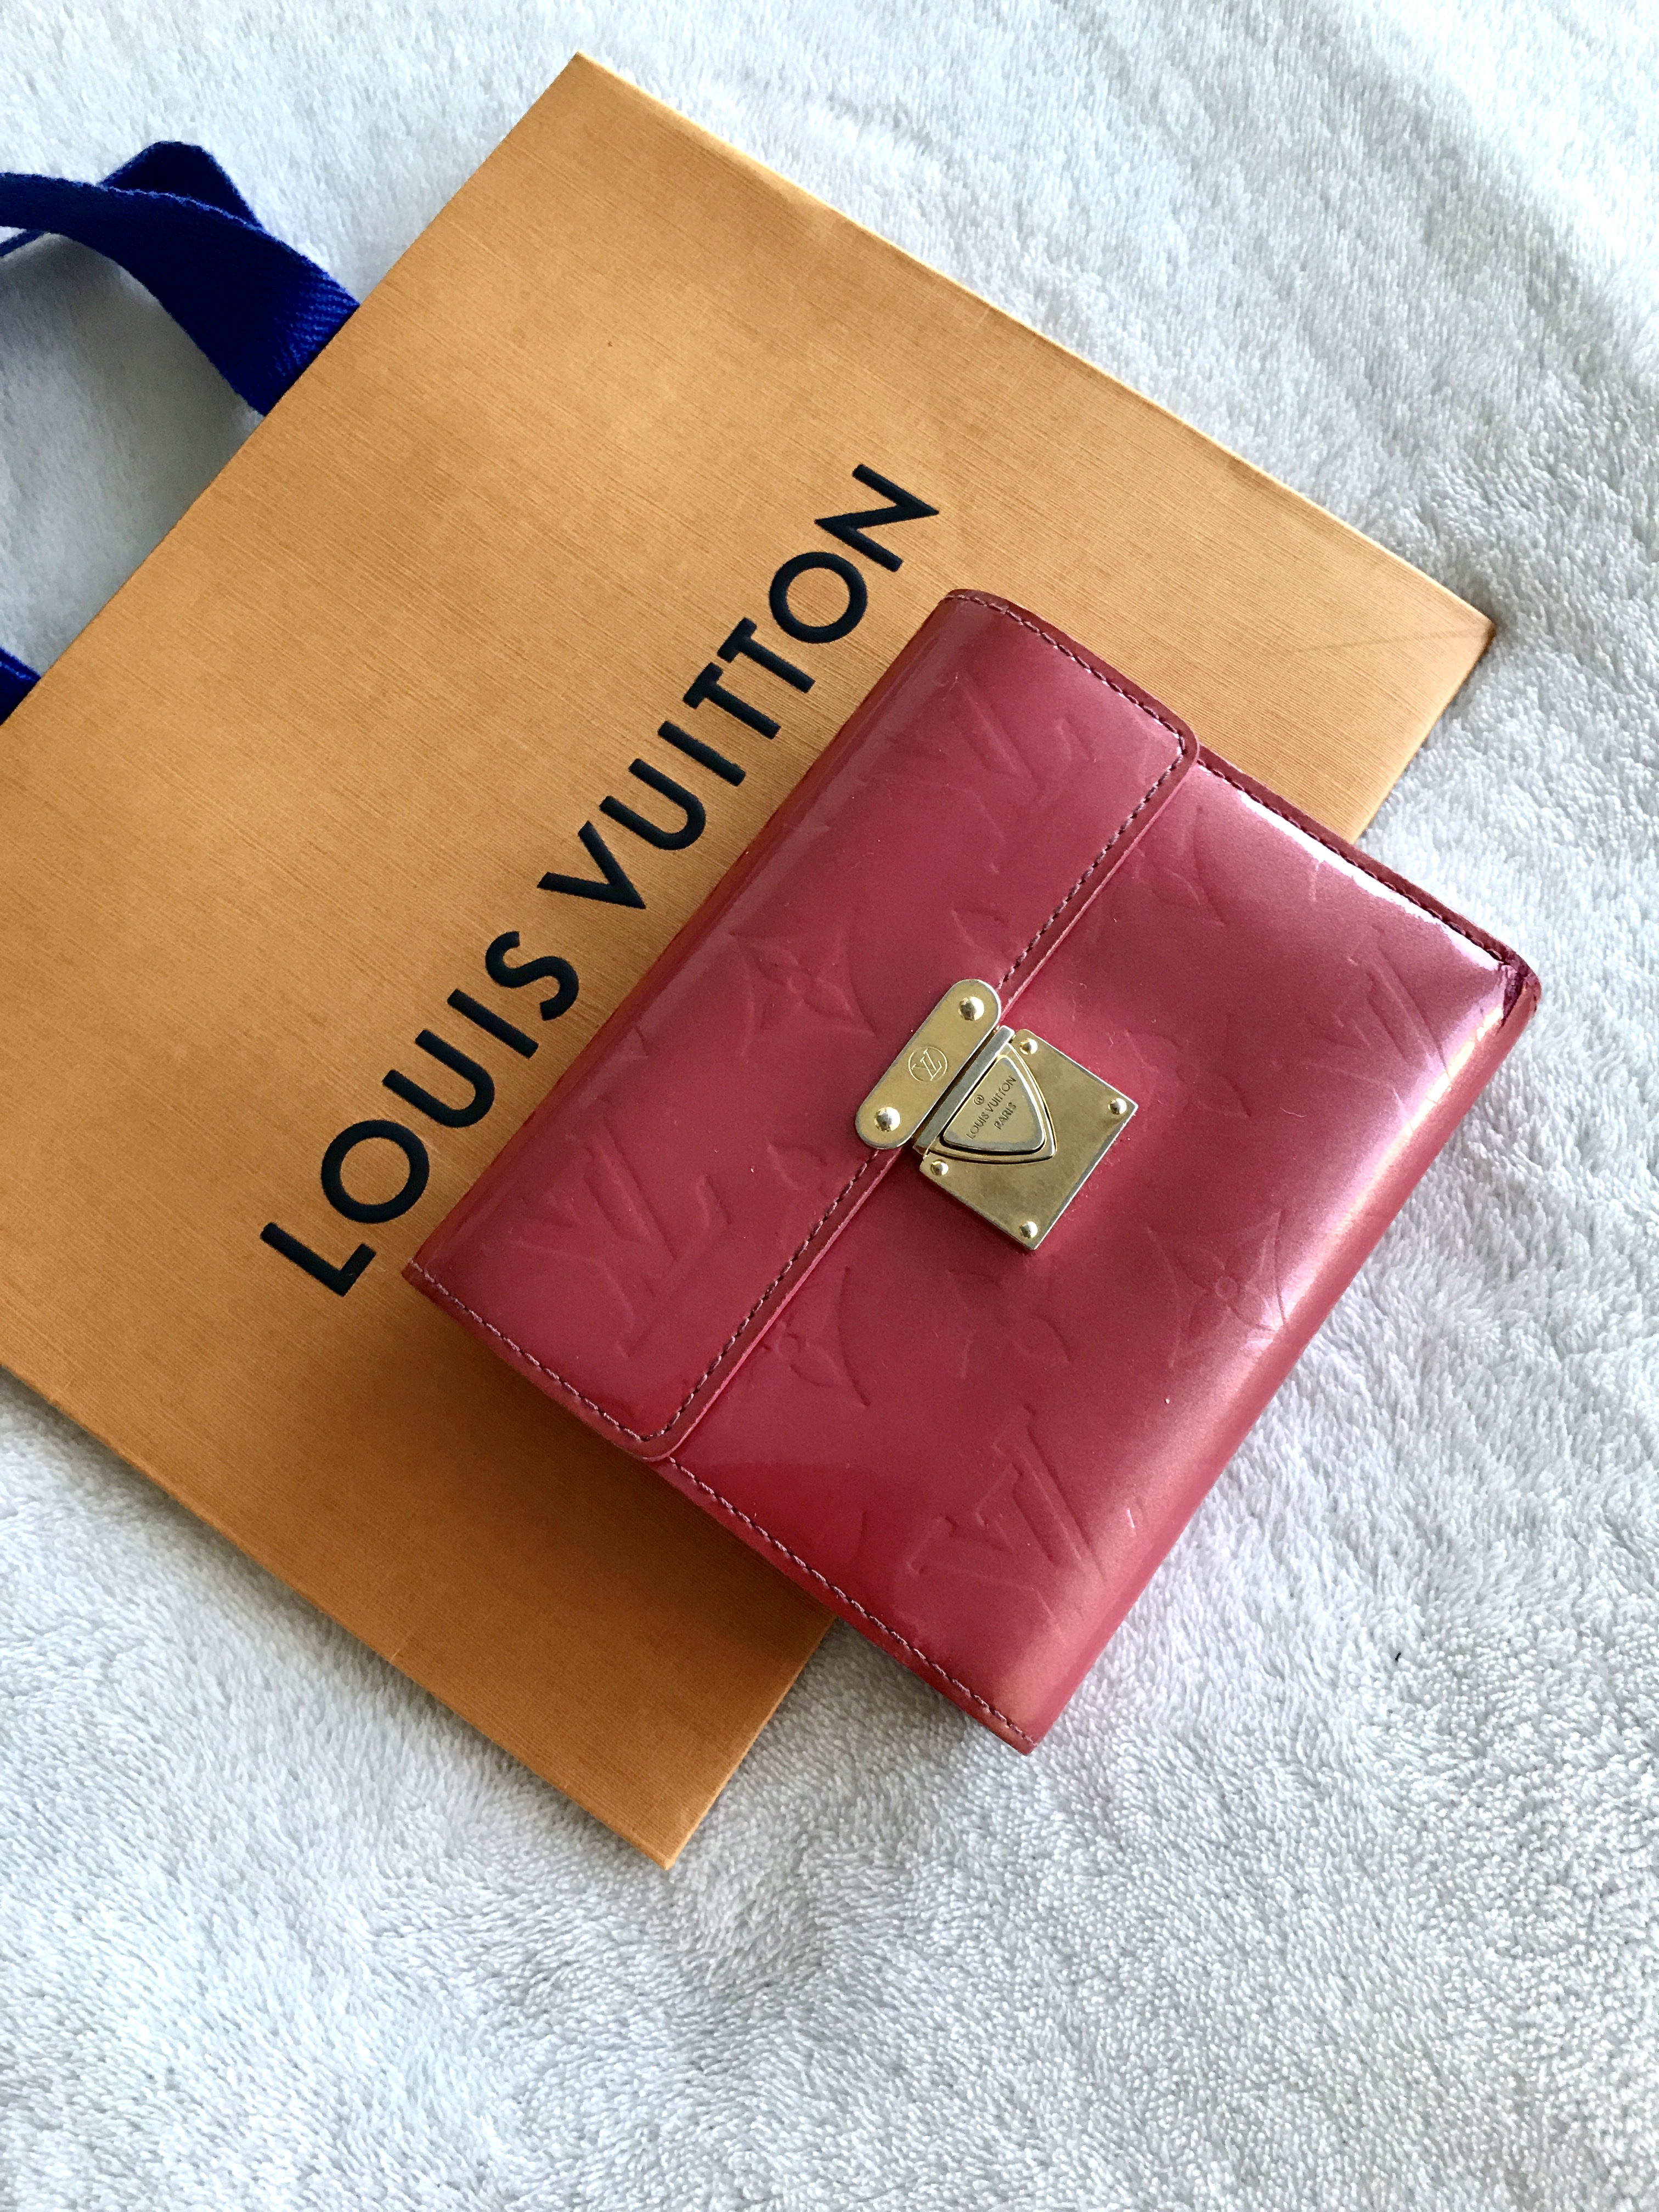 Louis Vuitton Monogram Vernis Koala wallet, framboise - Cheryl